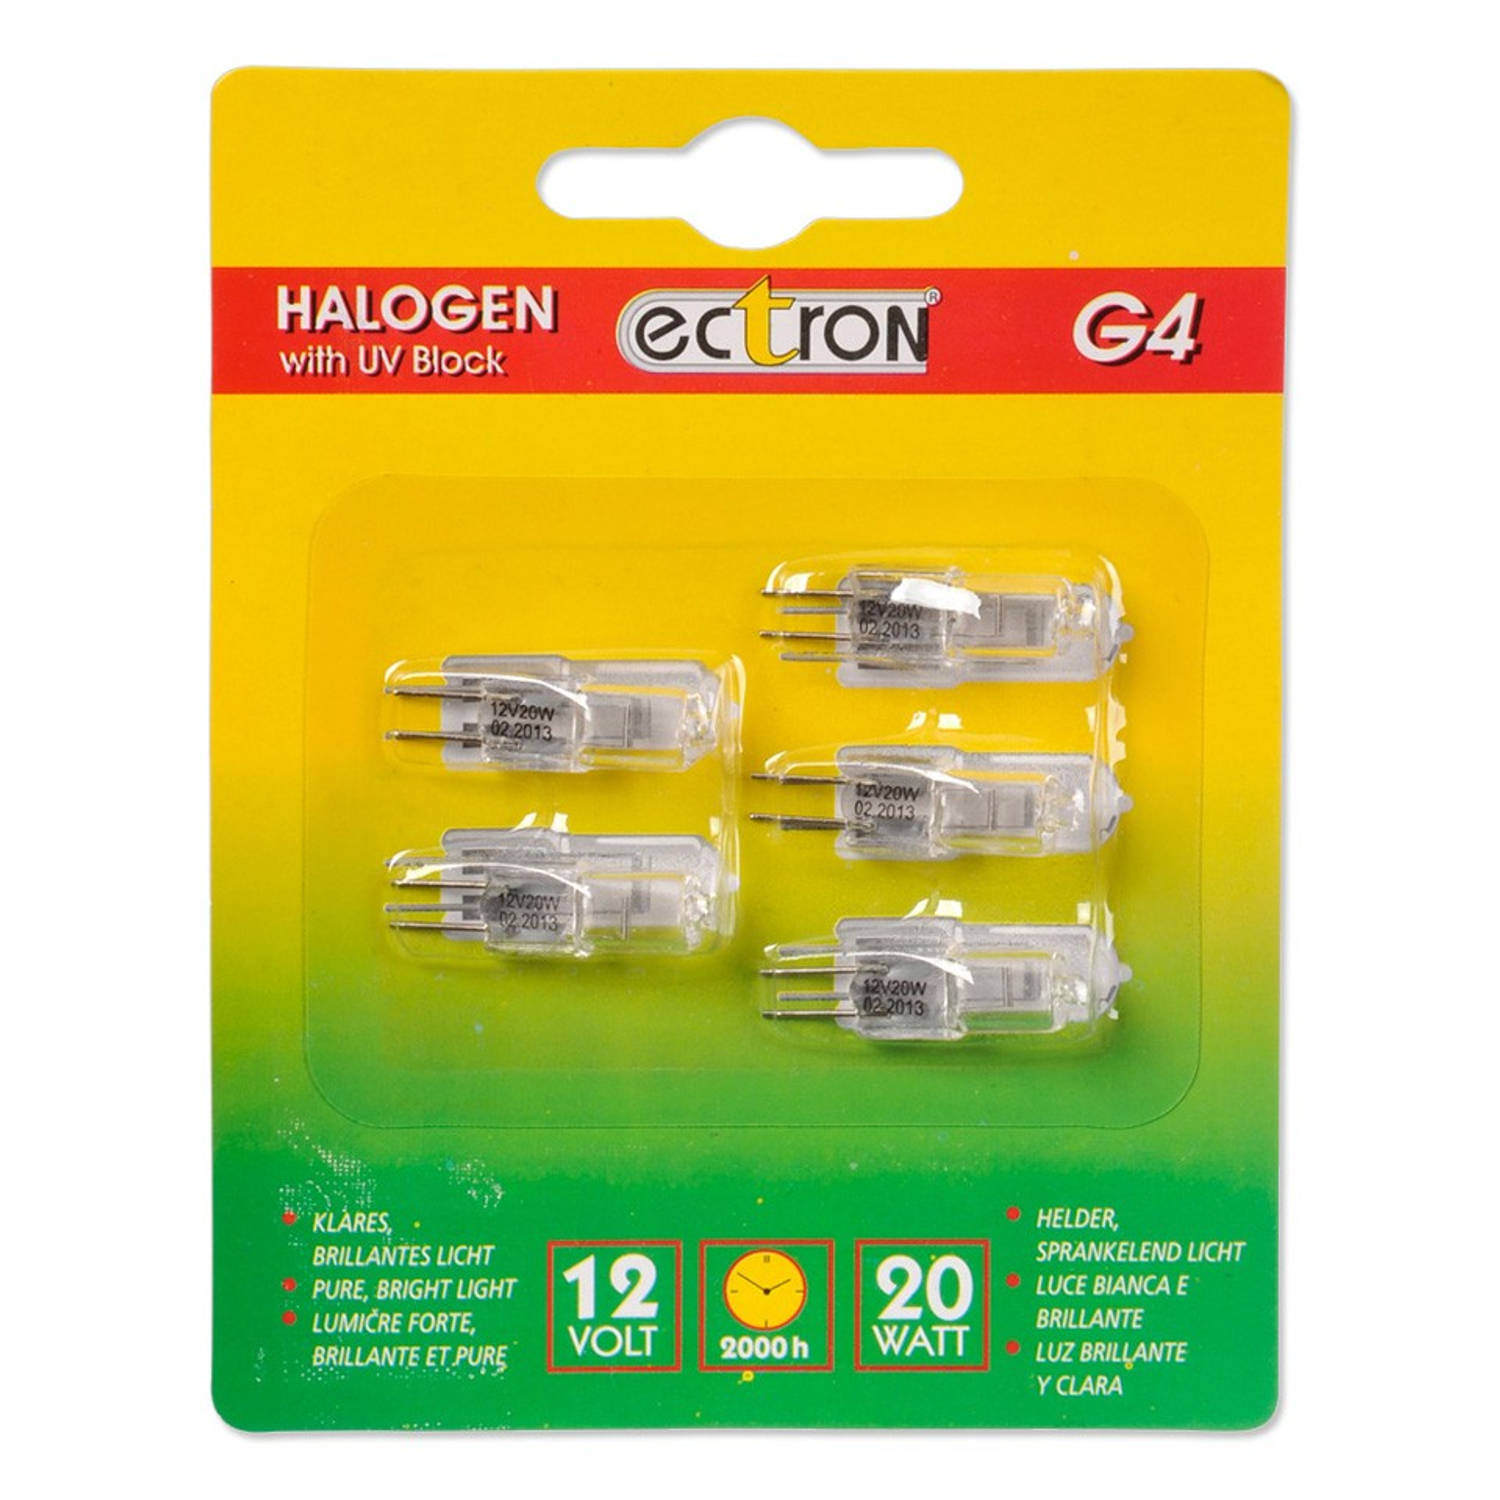 Ectron G4 halogeenlamp 5st | Blokker